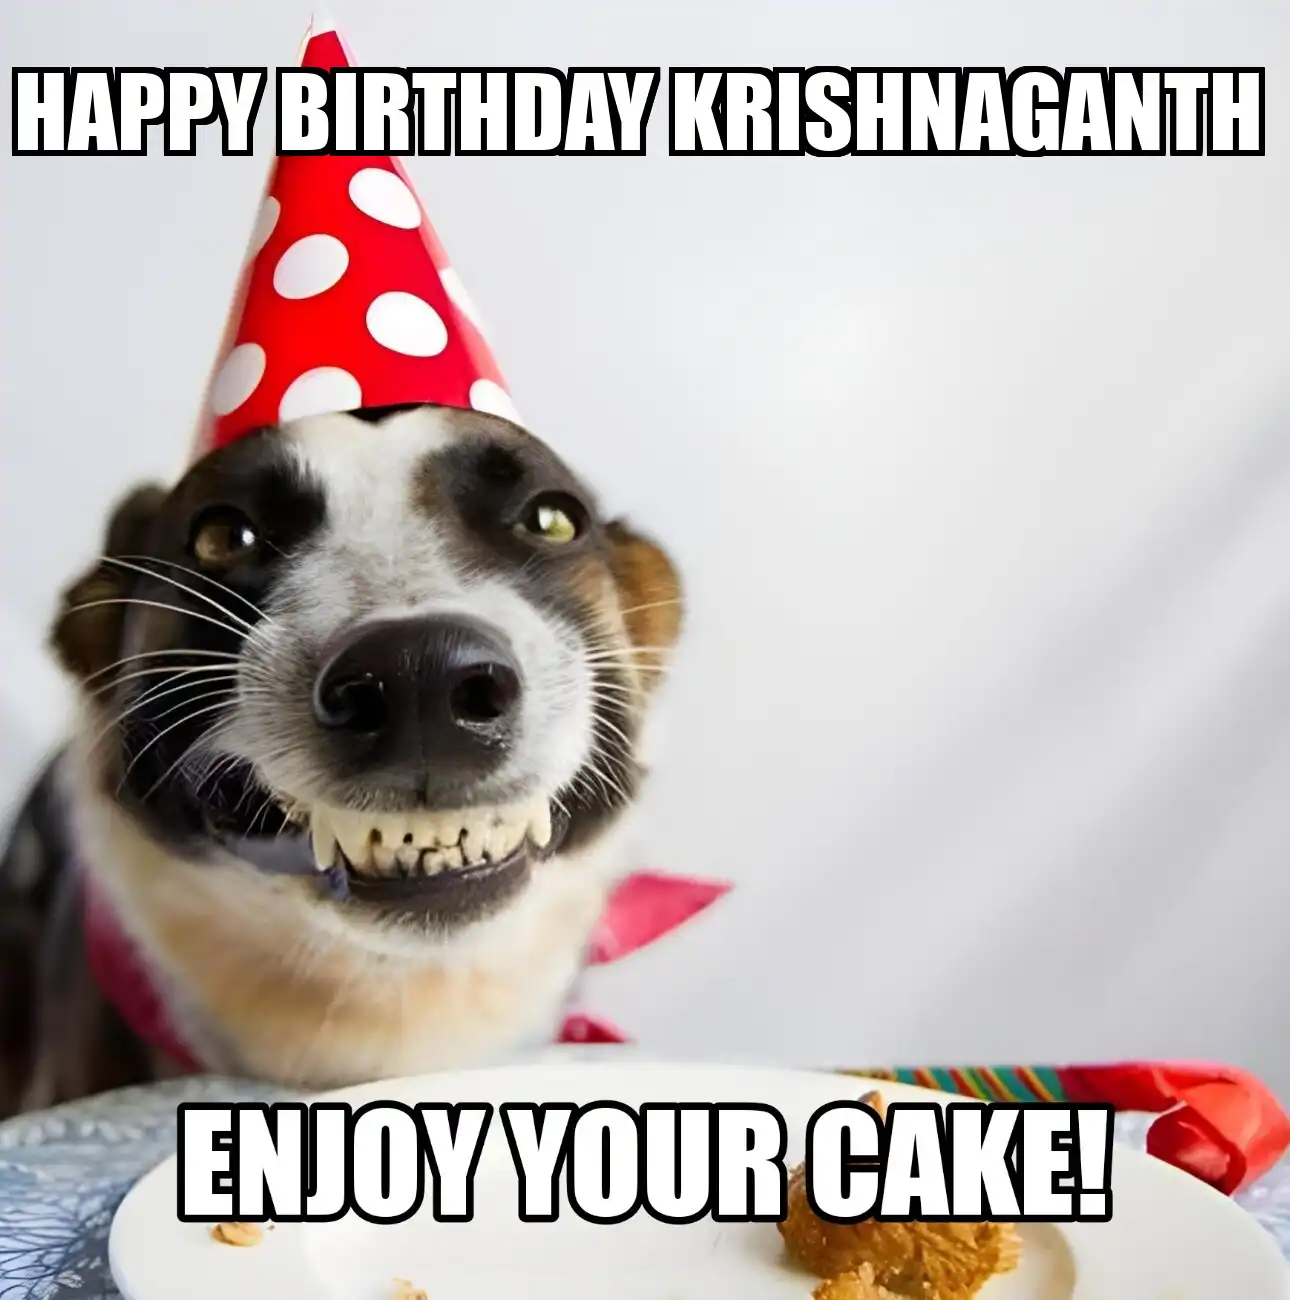 Happy Birthday Krishnaganth Enjoy Your Cake Dog Meme